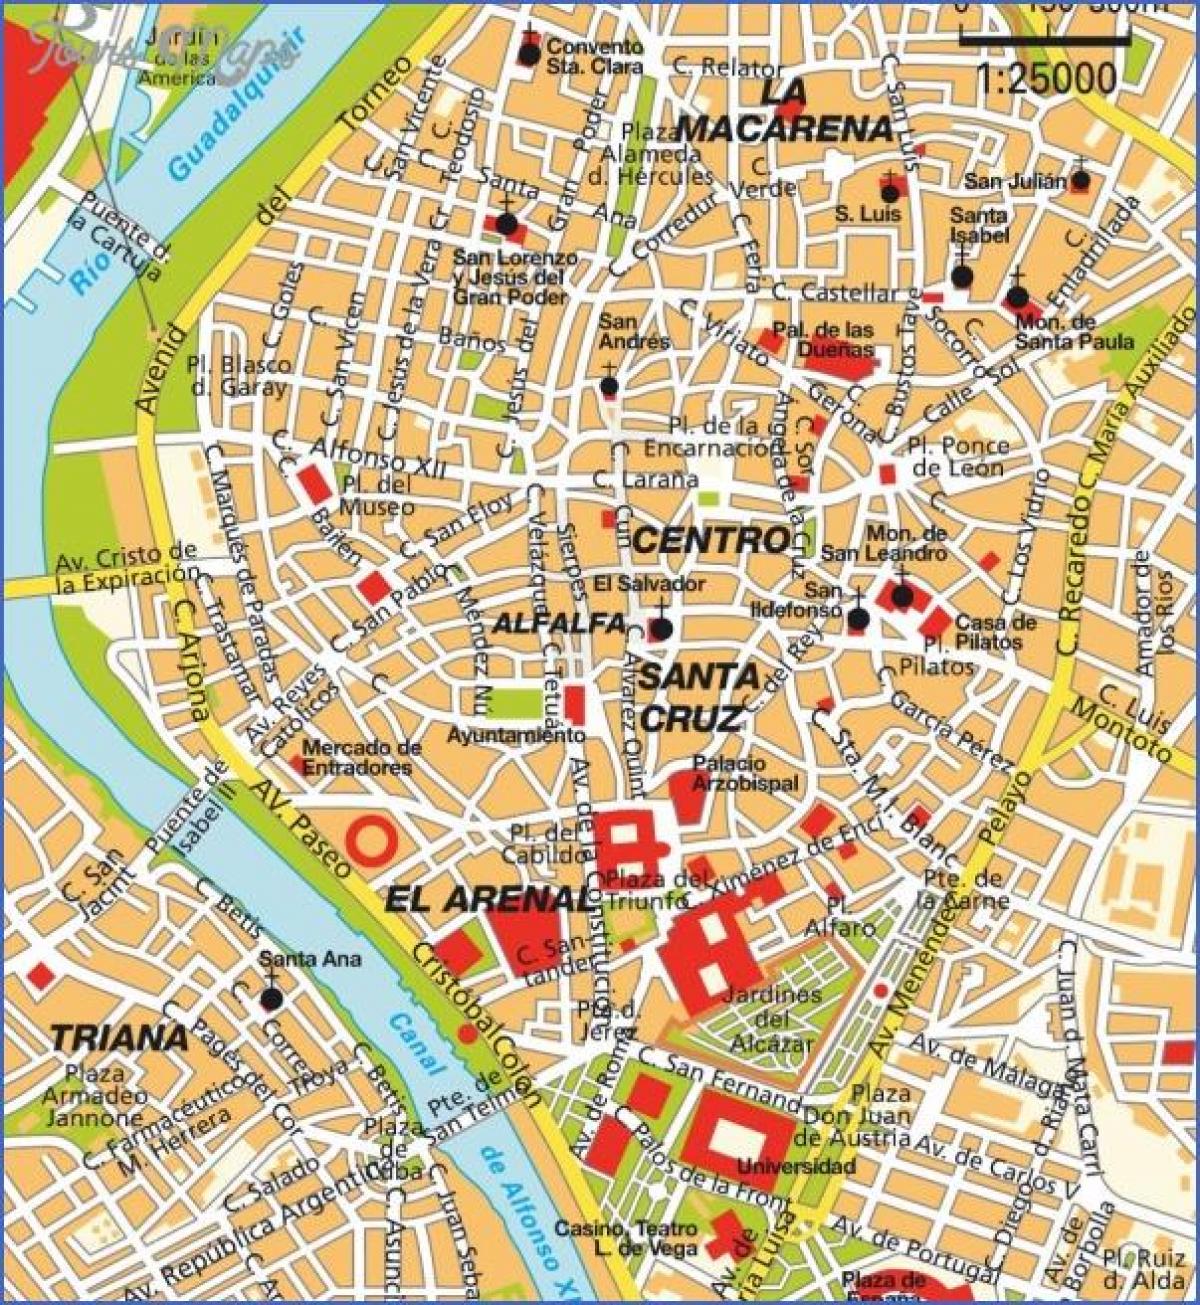 Забележителностите на Севиля на картата